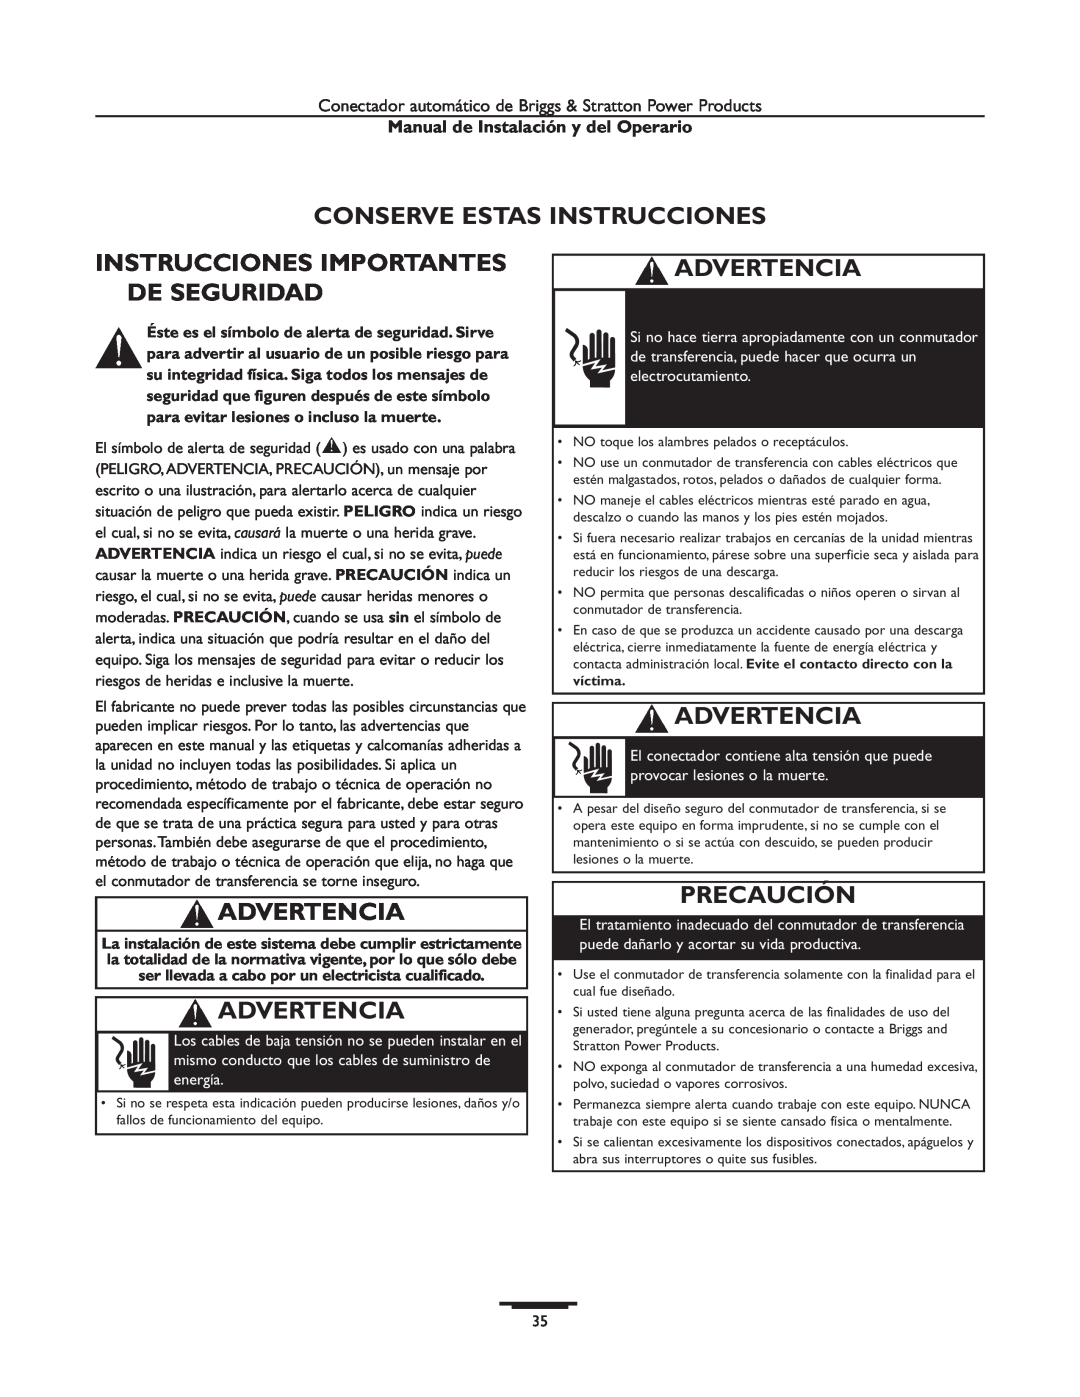 Briggs & Stratton 01813-1 Conserve Estas Instrucciones, Instrucciones Importantes De Seguridad, Advertencia, Precaución 